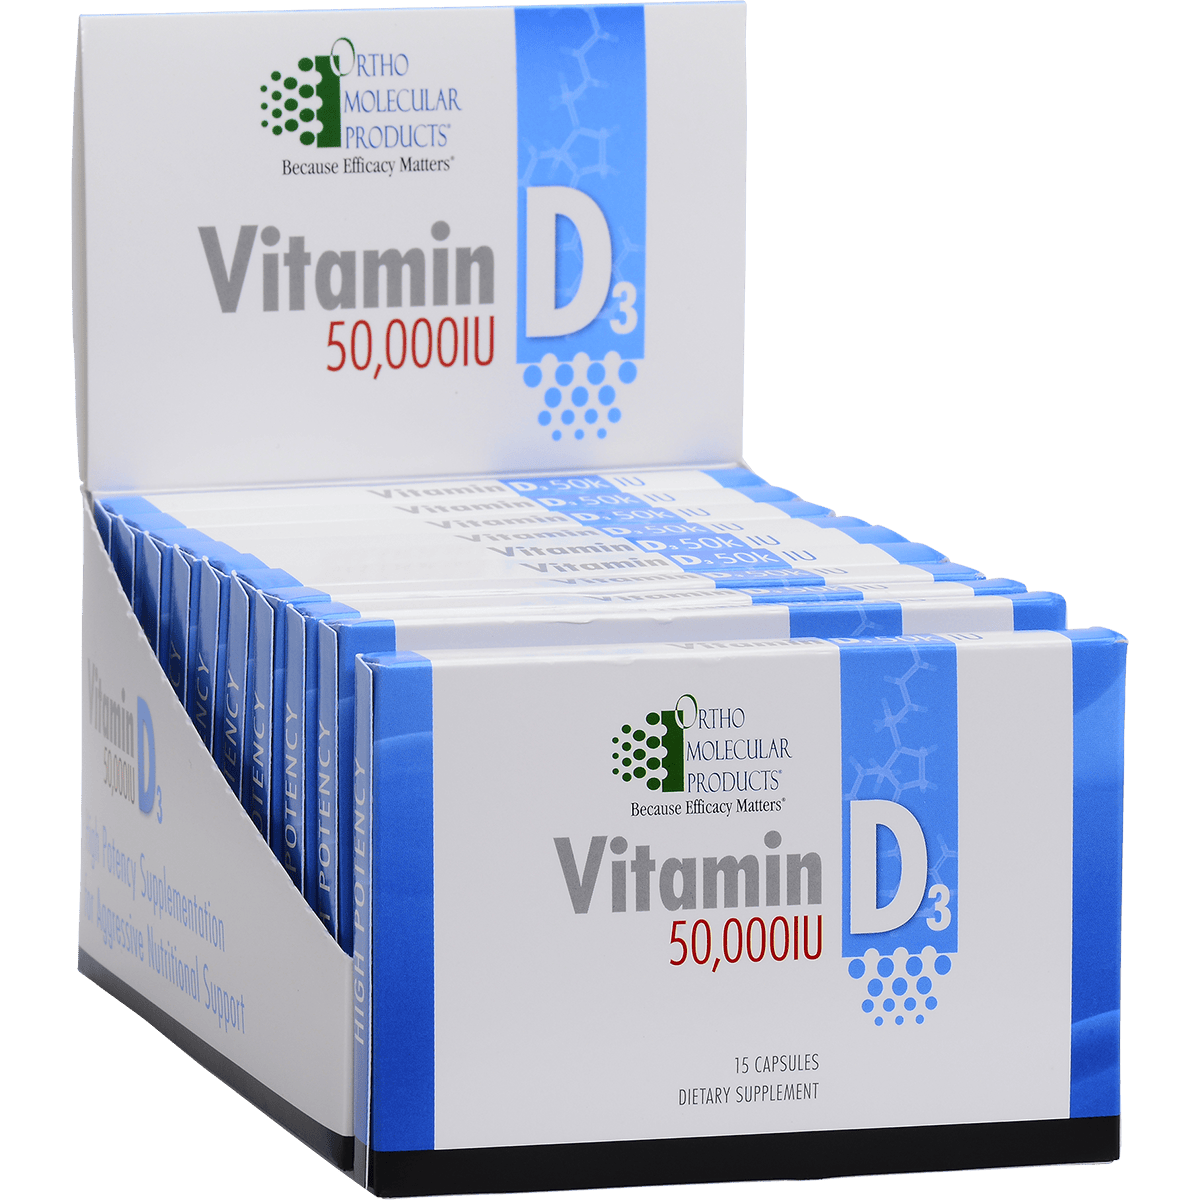 Vitamin D3 50,000 IU – The Natural Alternative